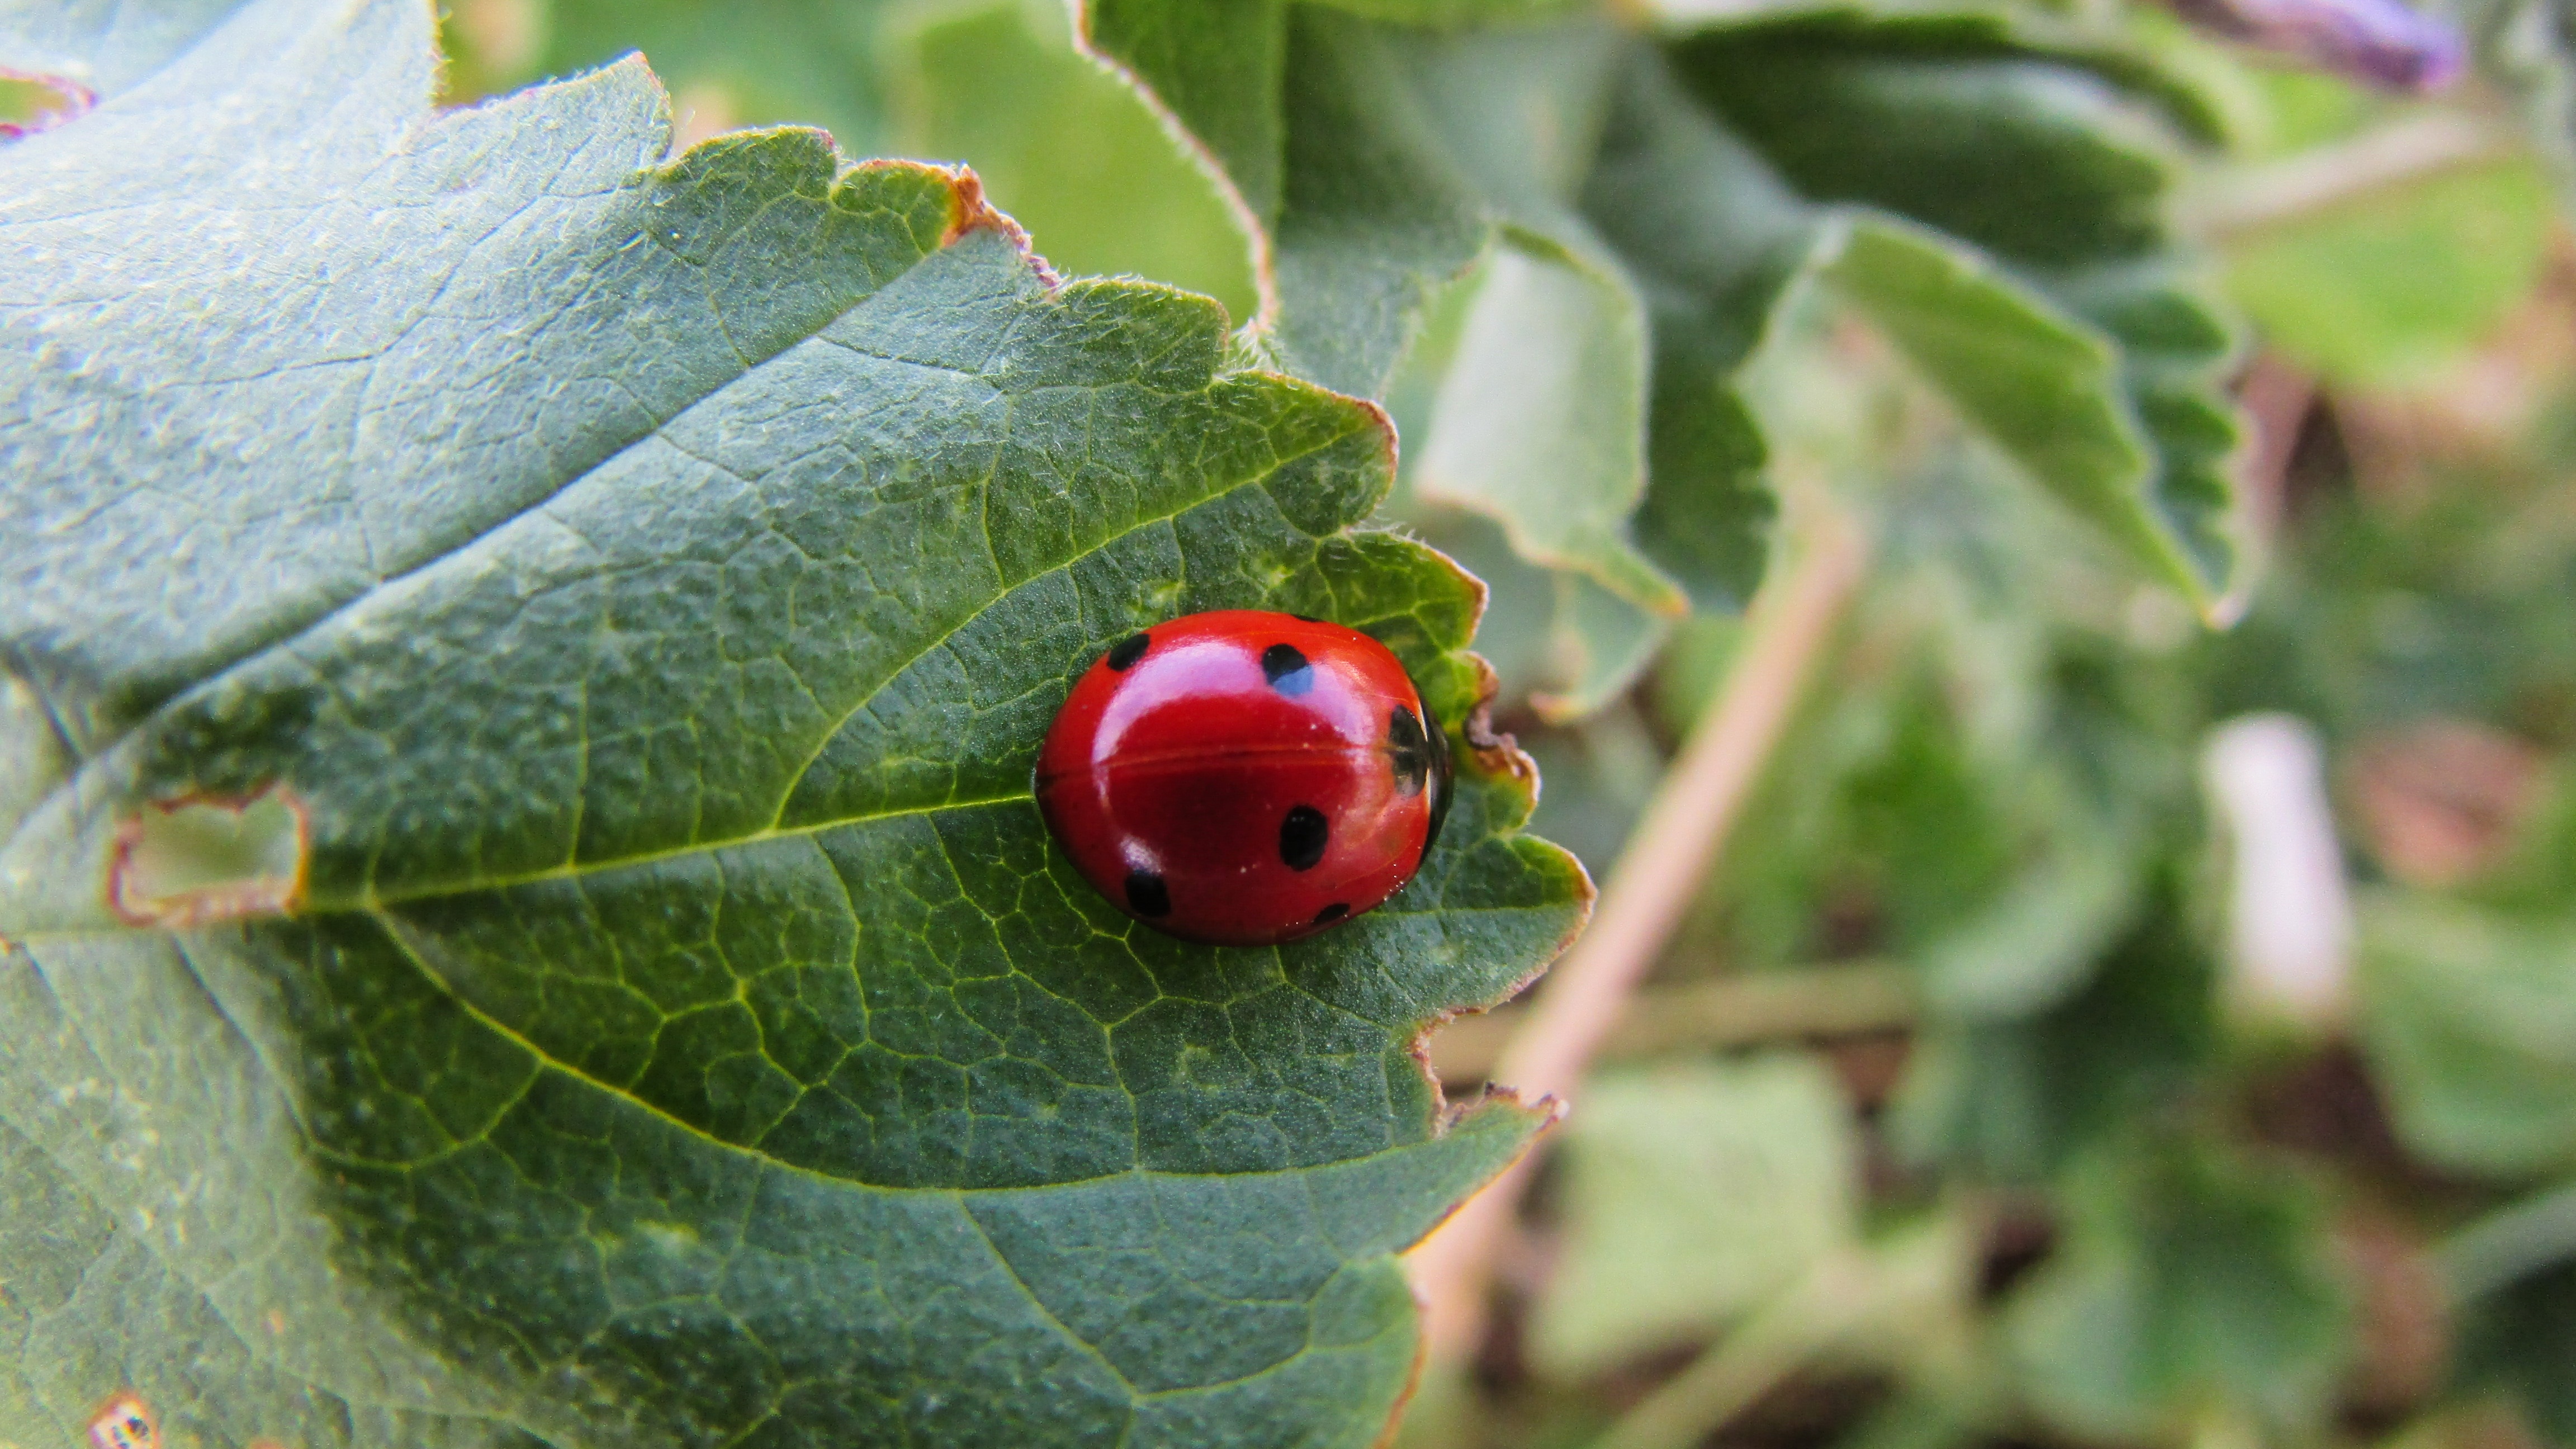 ladybug insect